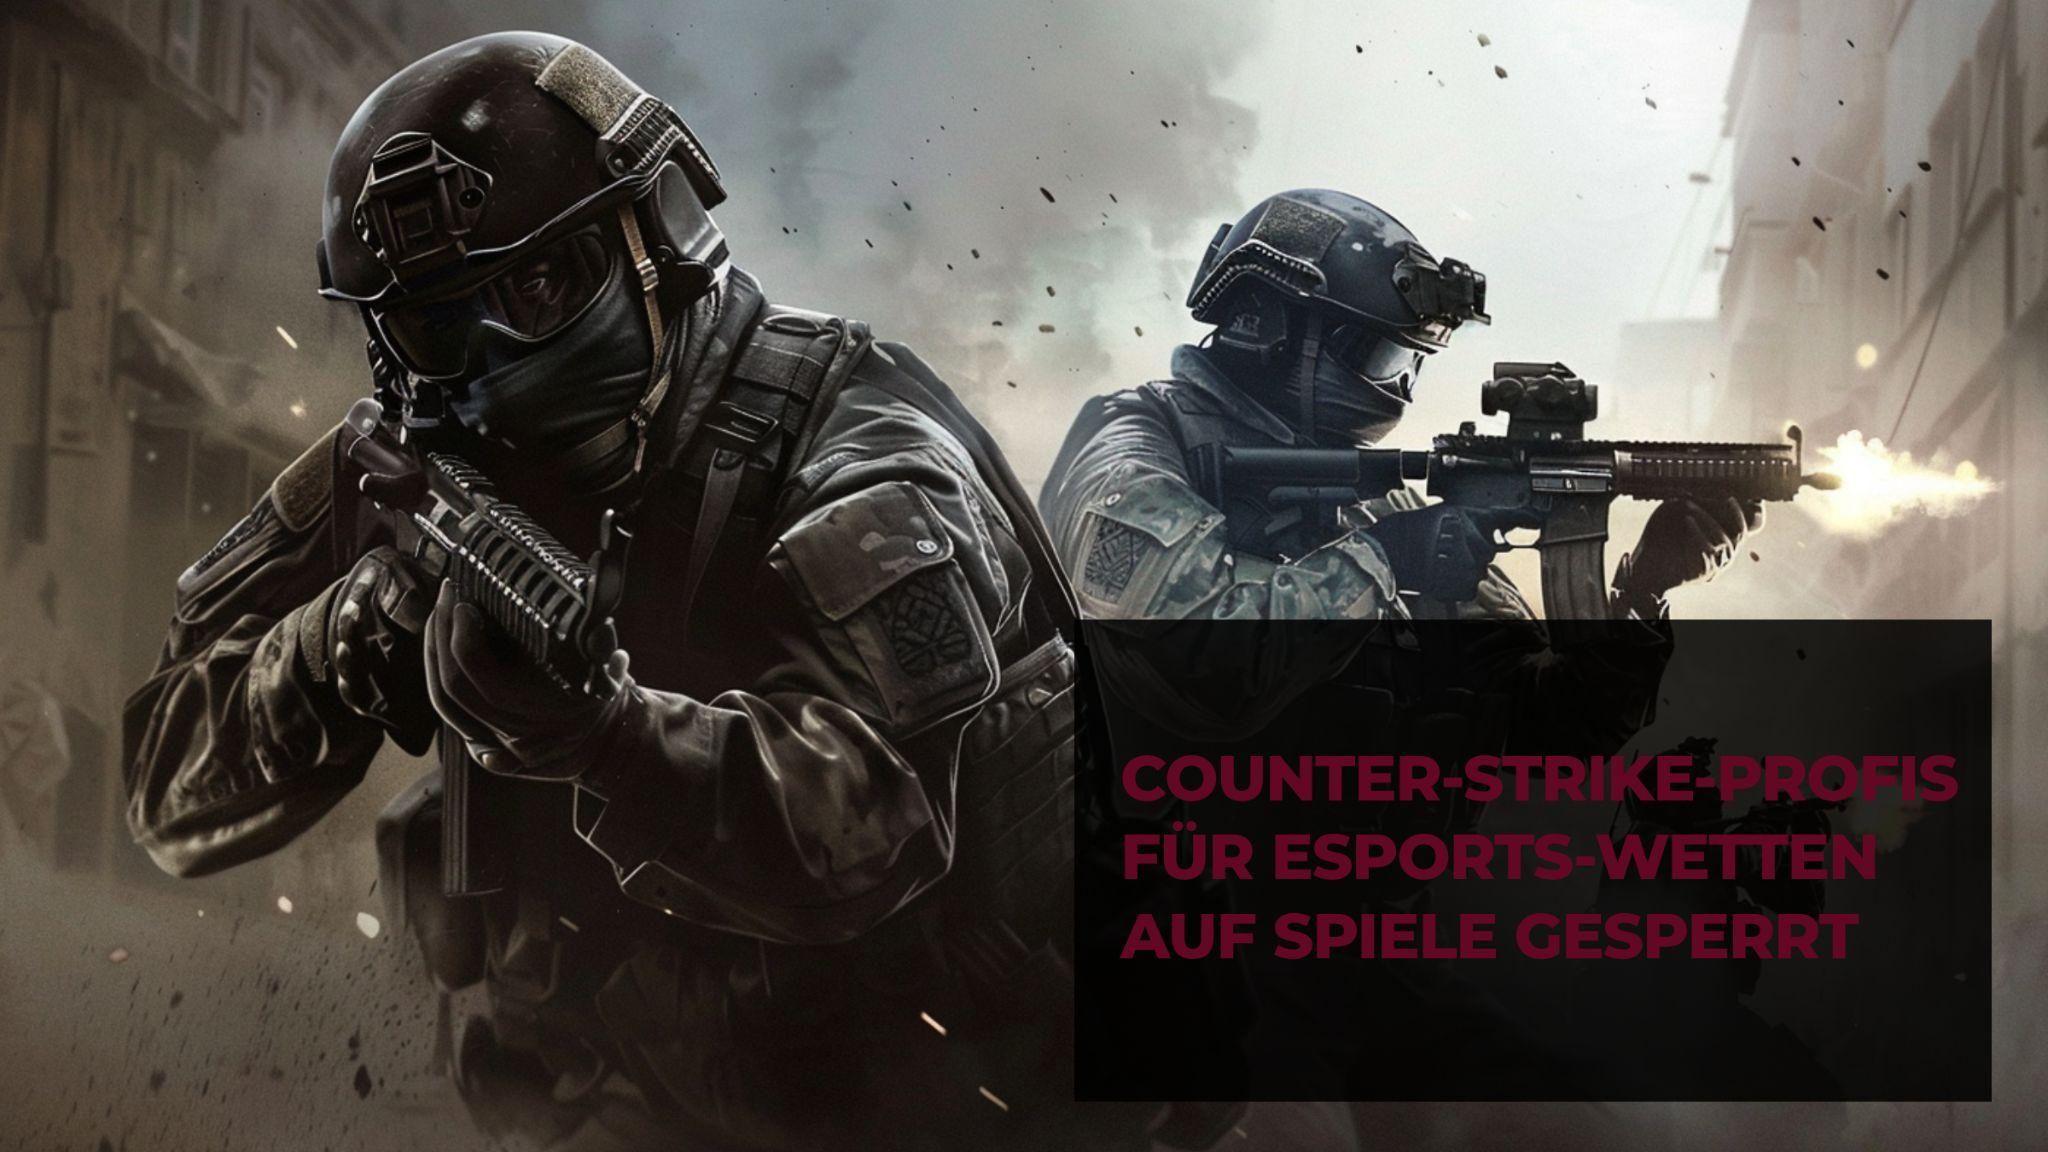 Profesjonaliści Counter-Strike'a mają zakaz obstawiania meczów ESports